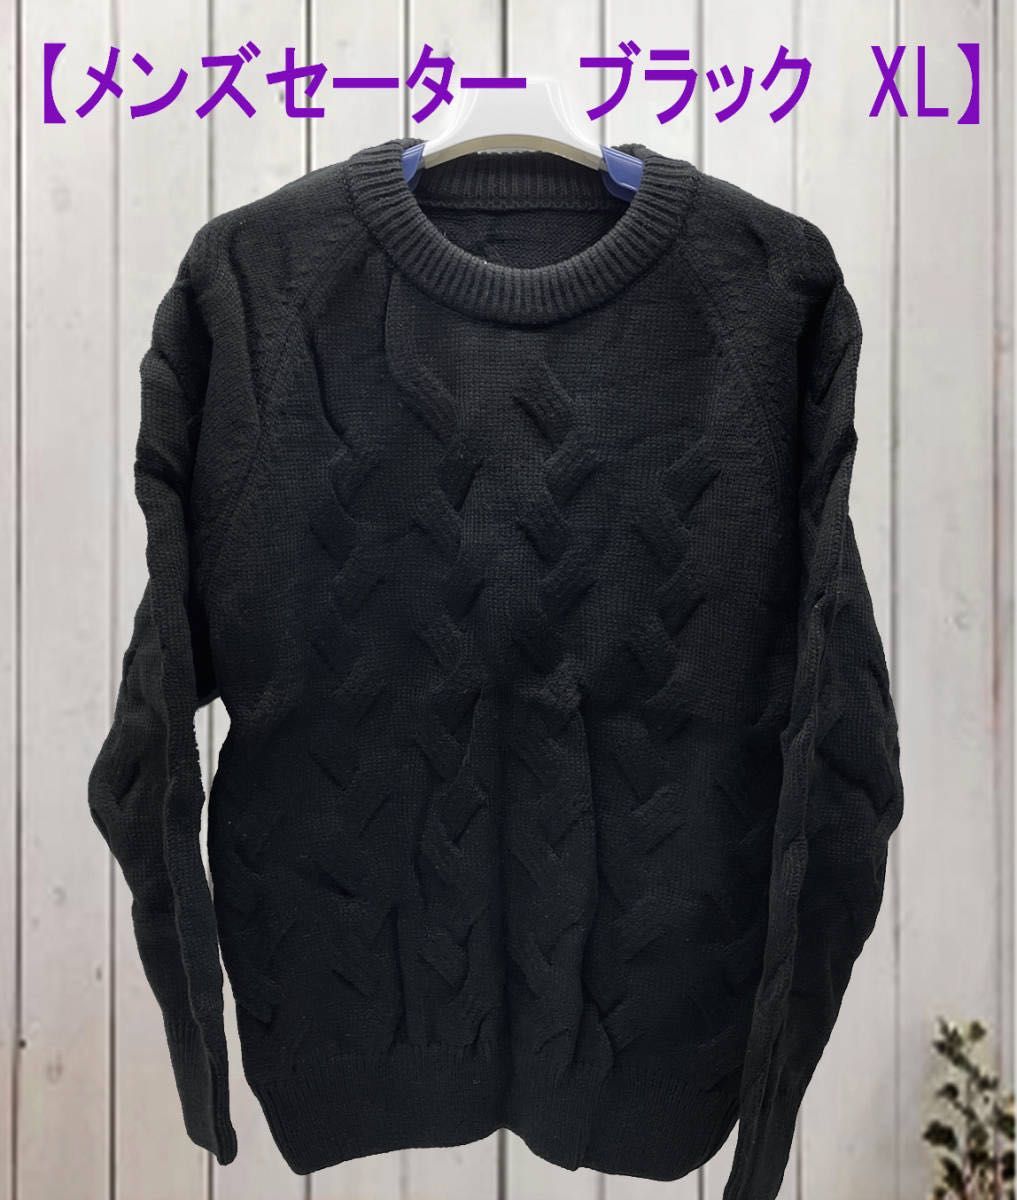 *[3a32] メンズ ニットセーター 冬服 暖かい 防寒 ブラック ★新品